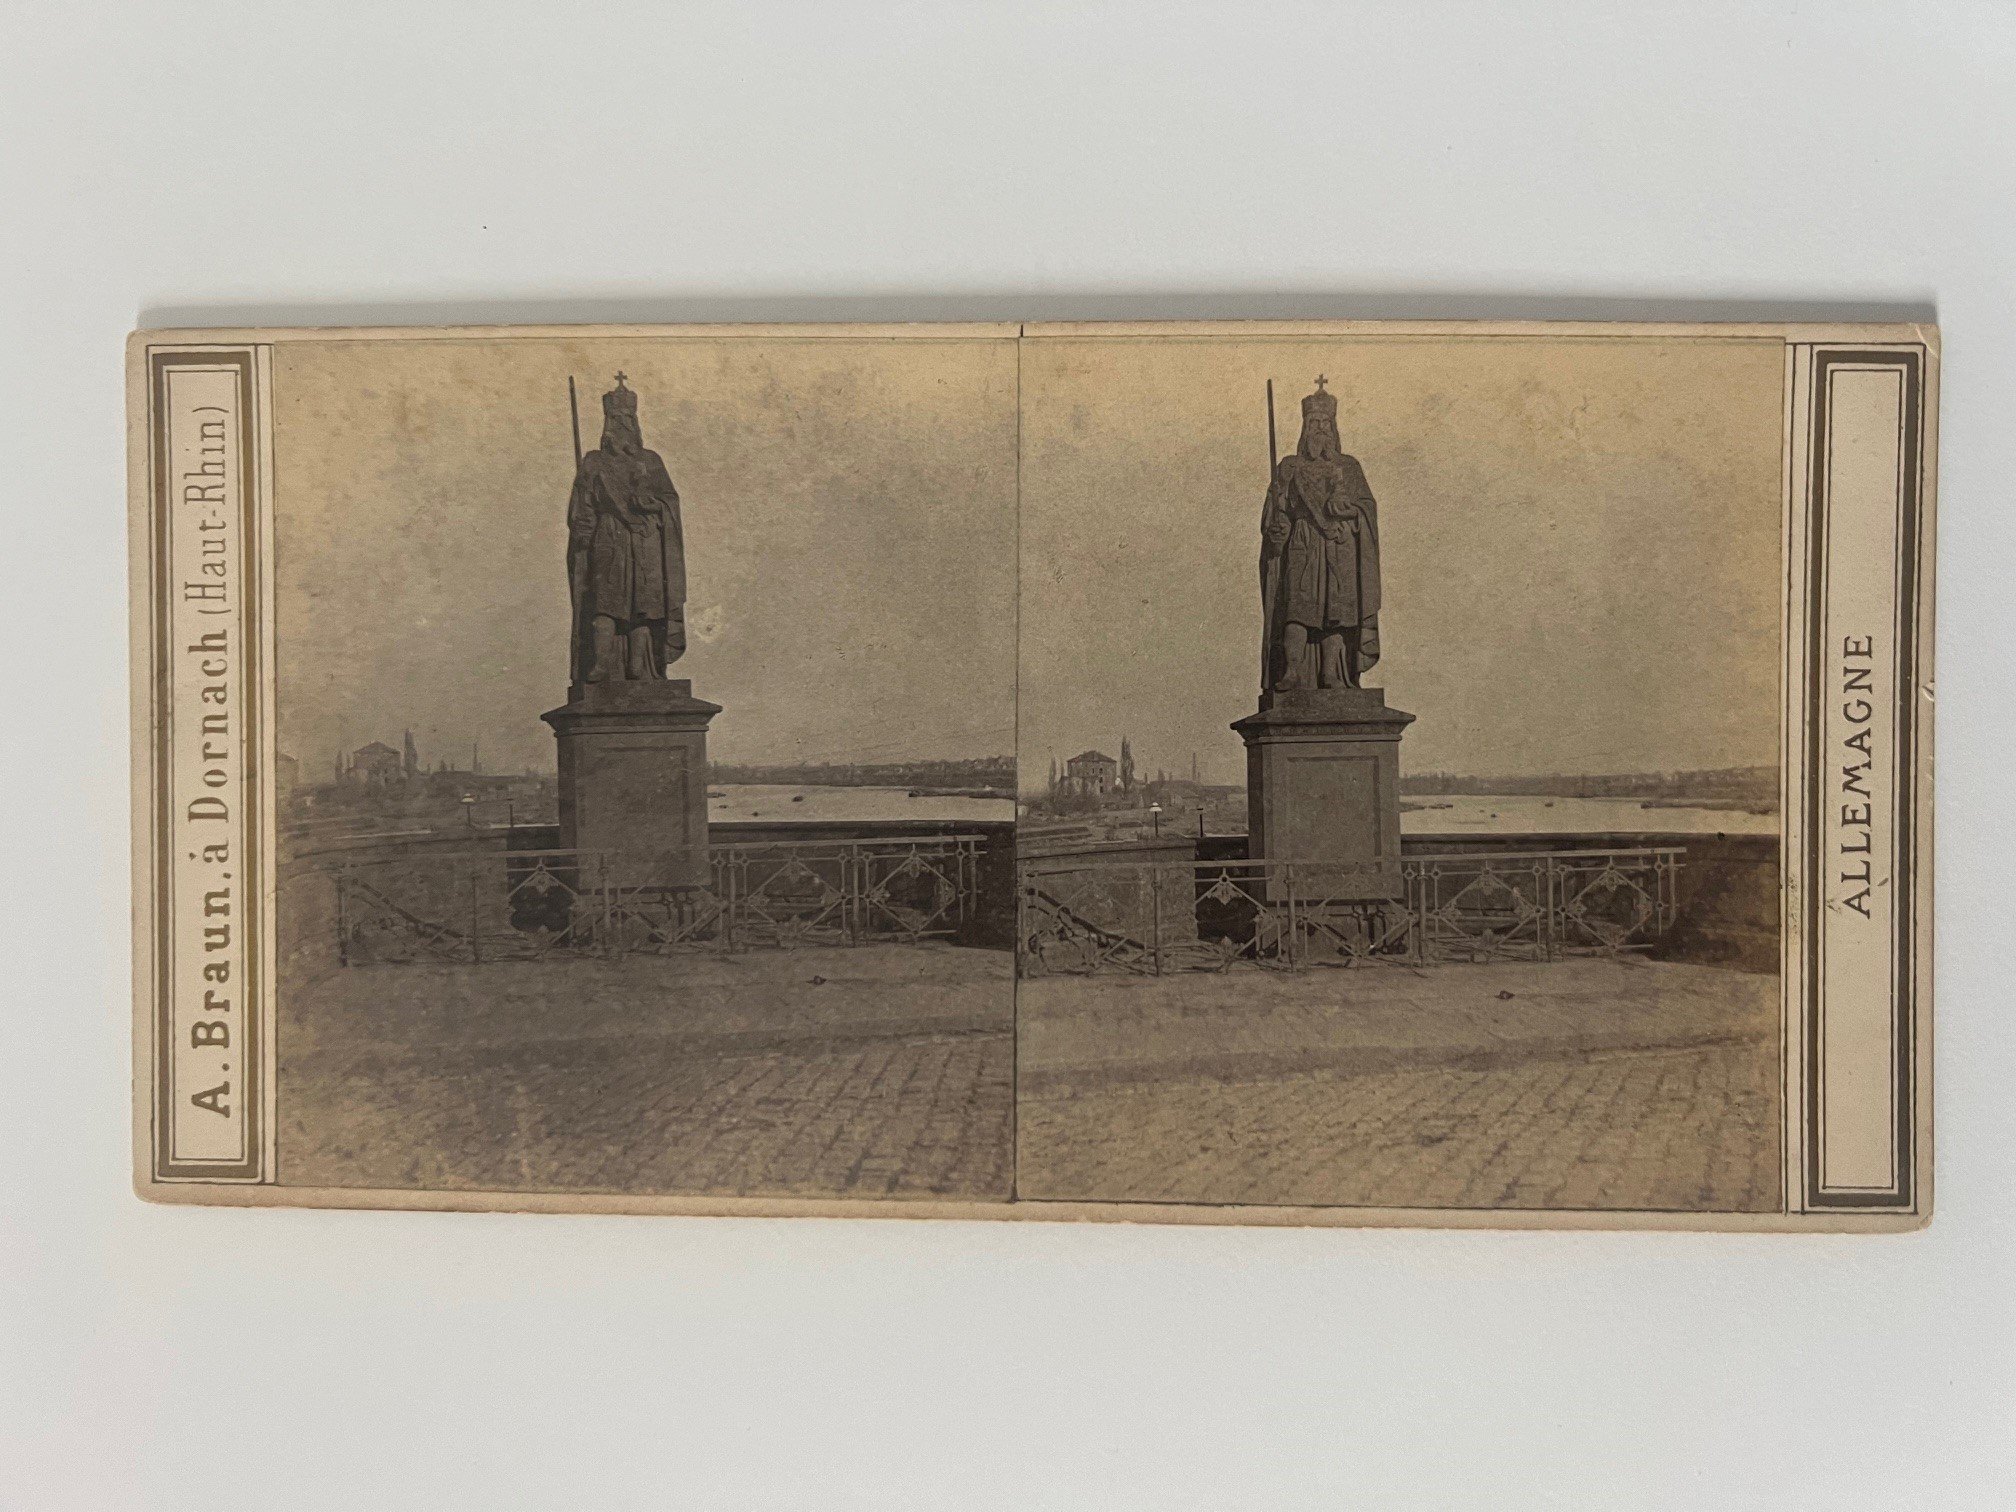 Stereobild, Adolphe Braun, Frankfurt, Statue de Charlemagne, dat. 17. Juni 1867. (Taunus-Rhein-Main - Regionalgeschichtliche Sammlung Dr. Stefan Naas CC BY-NC-SA)